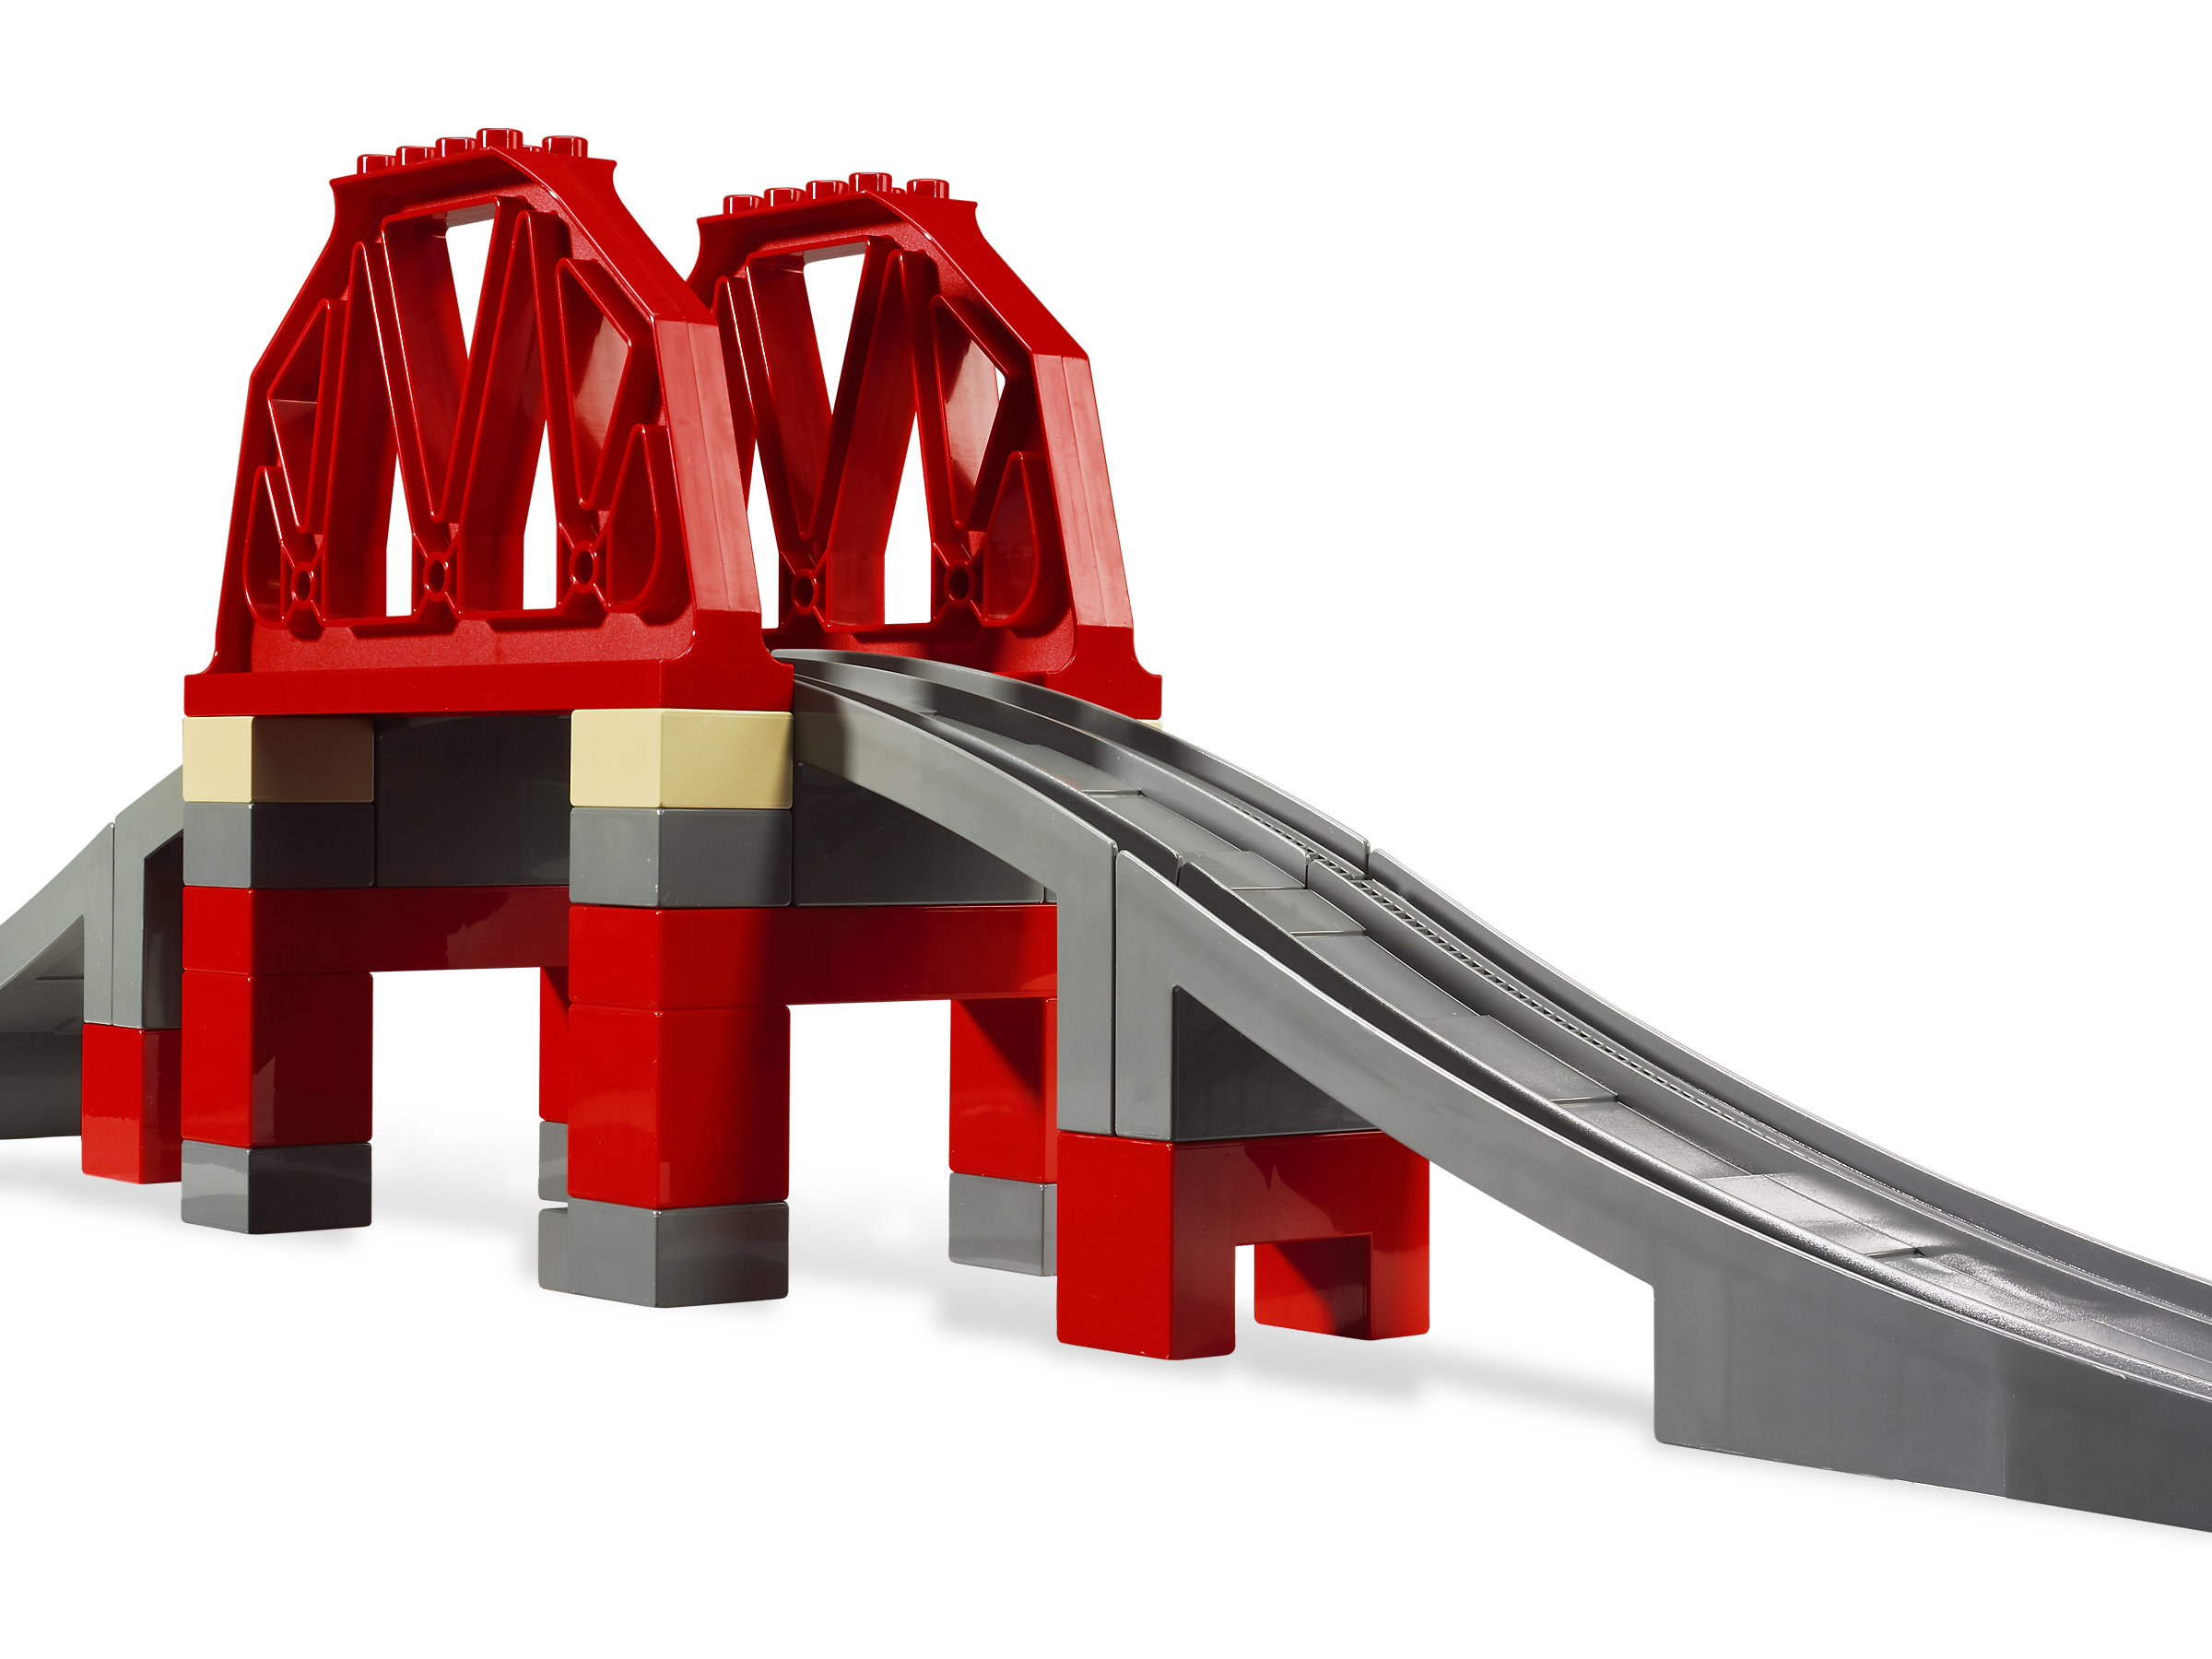 1x Lego Duplo Support Red Grid Rack Stand Bridge Pillar 3774 9212 51559